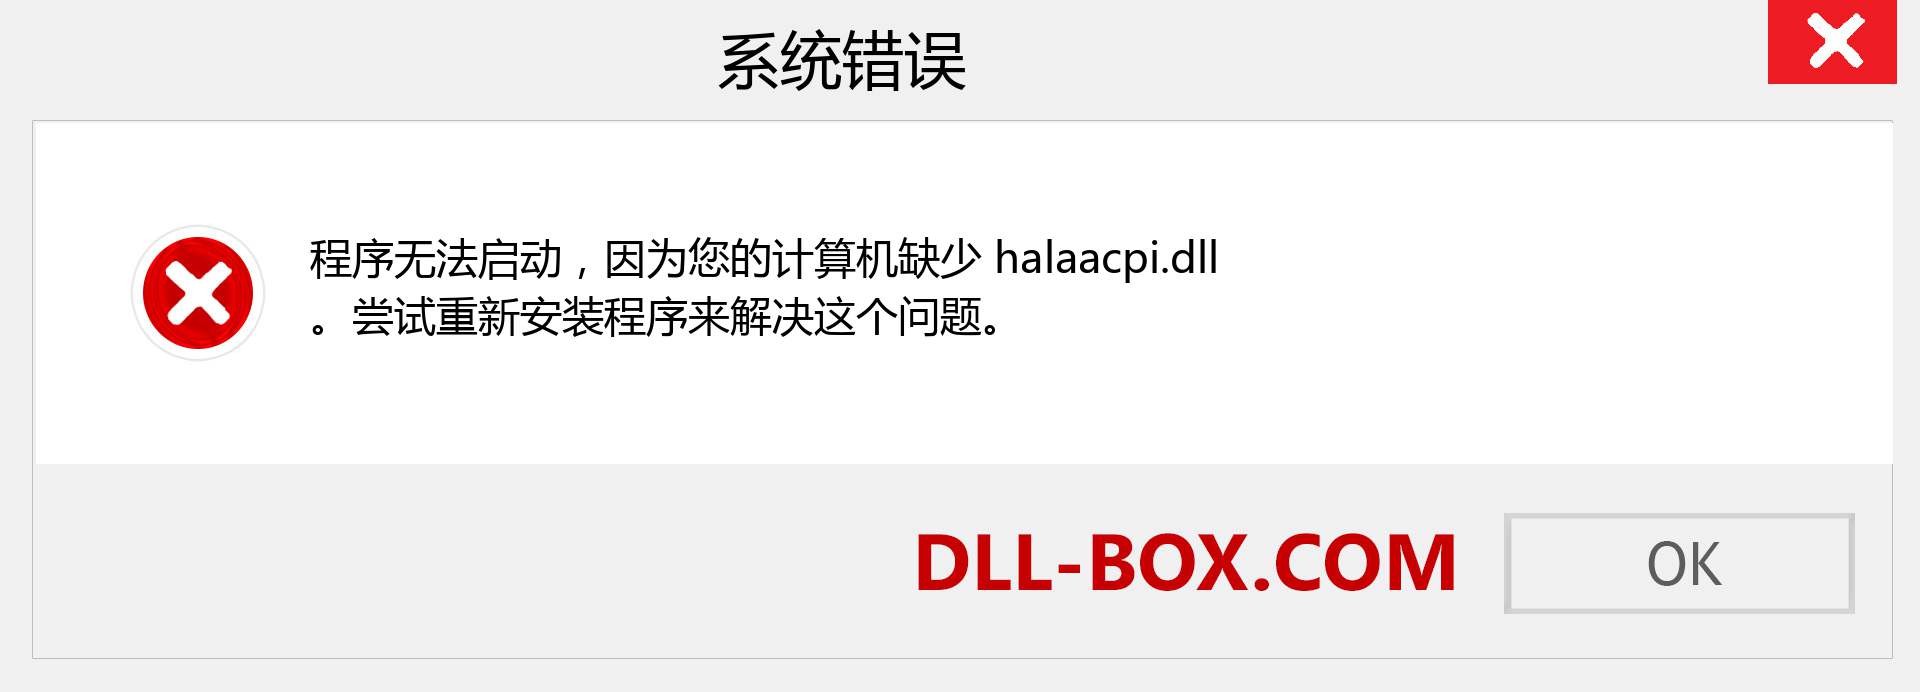 halaacpi.dll 文件丢失？。 适用于 Windows 7、8、10 的下载 - 修复 Windows、照片、图像上的 halaacpi dll 丢失错误